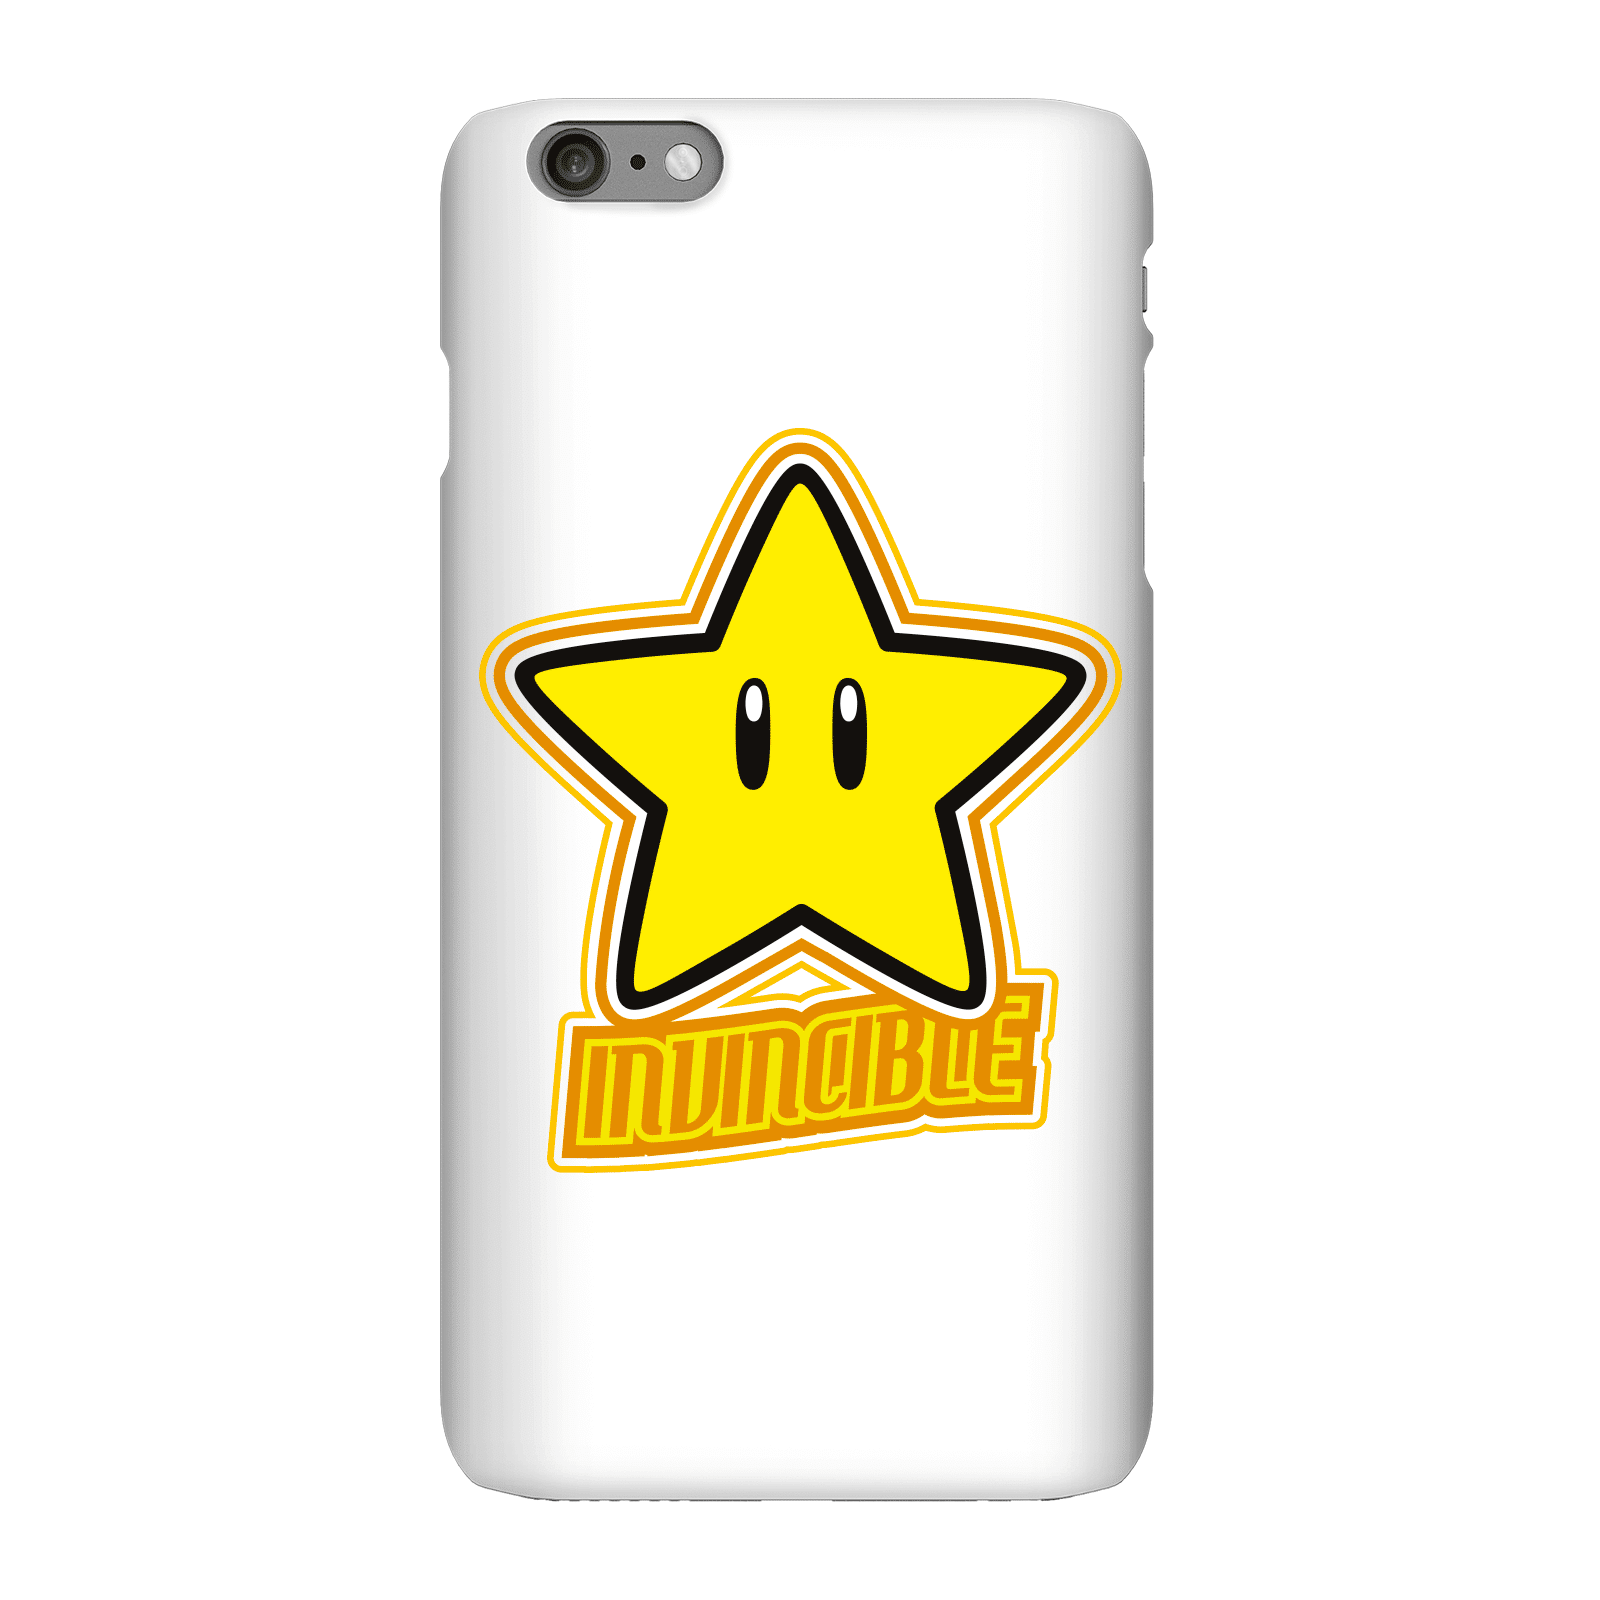 Nintendo Super Mario Invincible Phone Case - iPhone 6 Plus - Snap Case - Matte